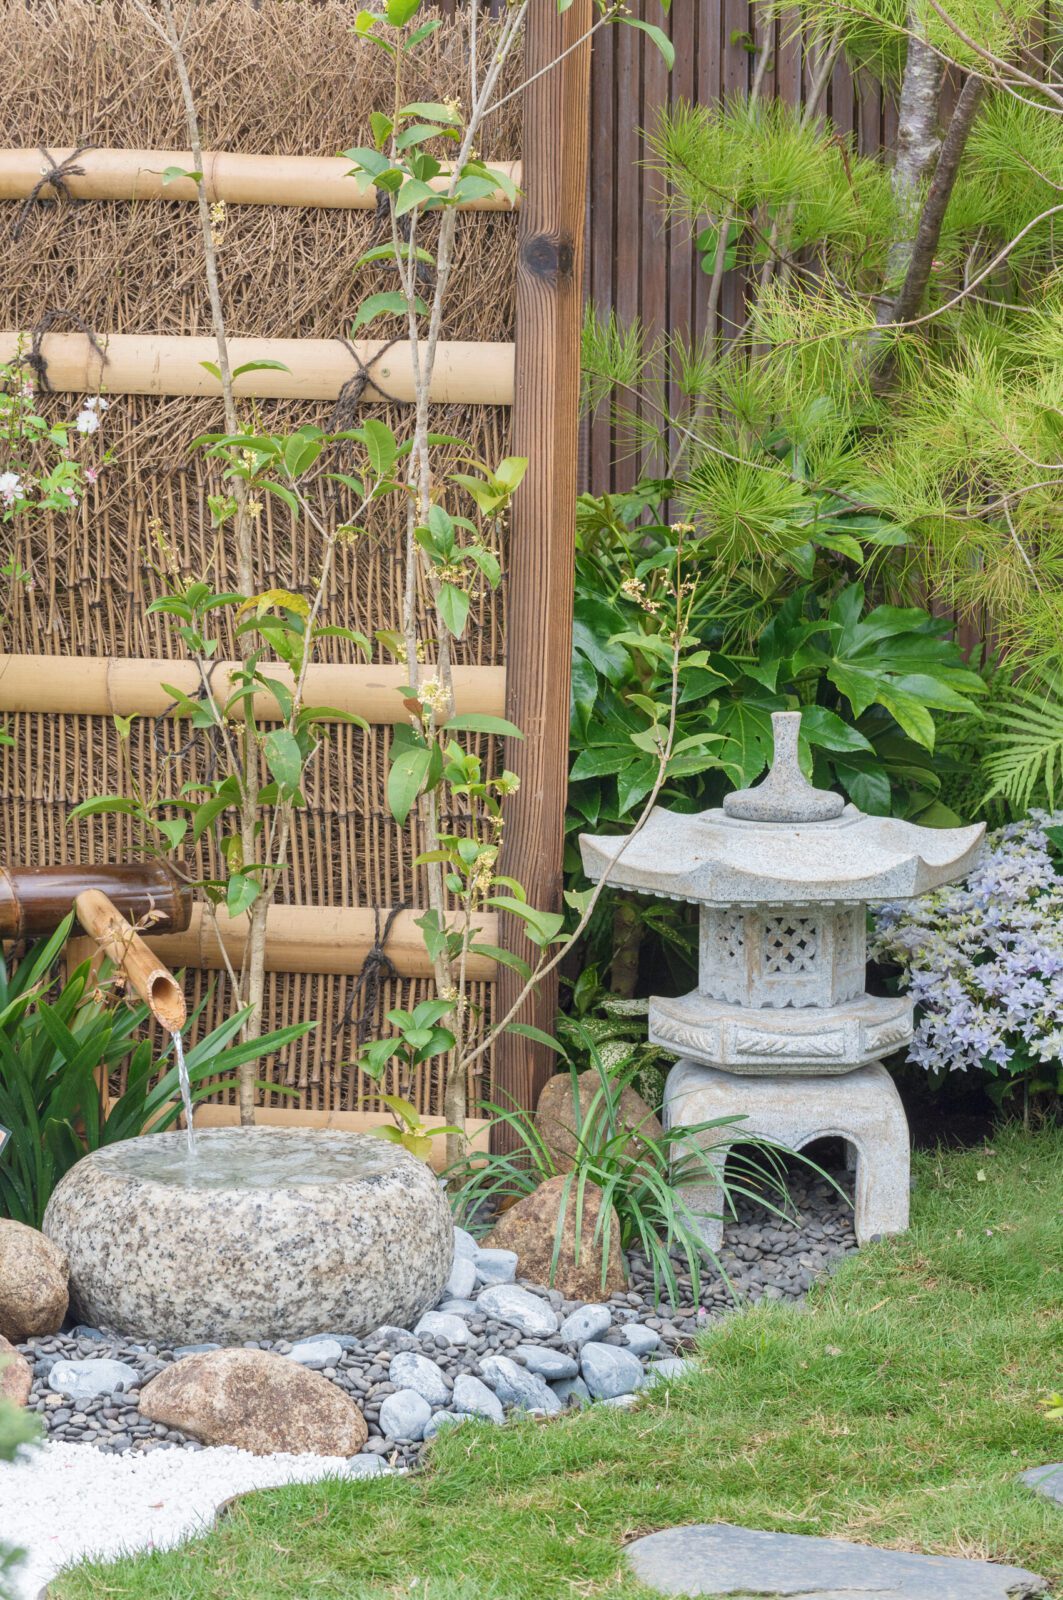 stone lantern and bamboo fountain in Japanese garden | City Floral Garden Center - Denver